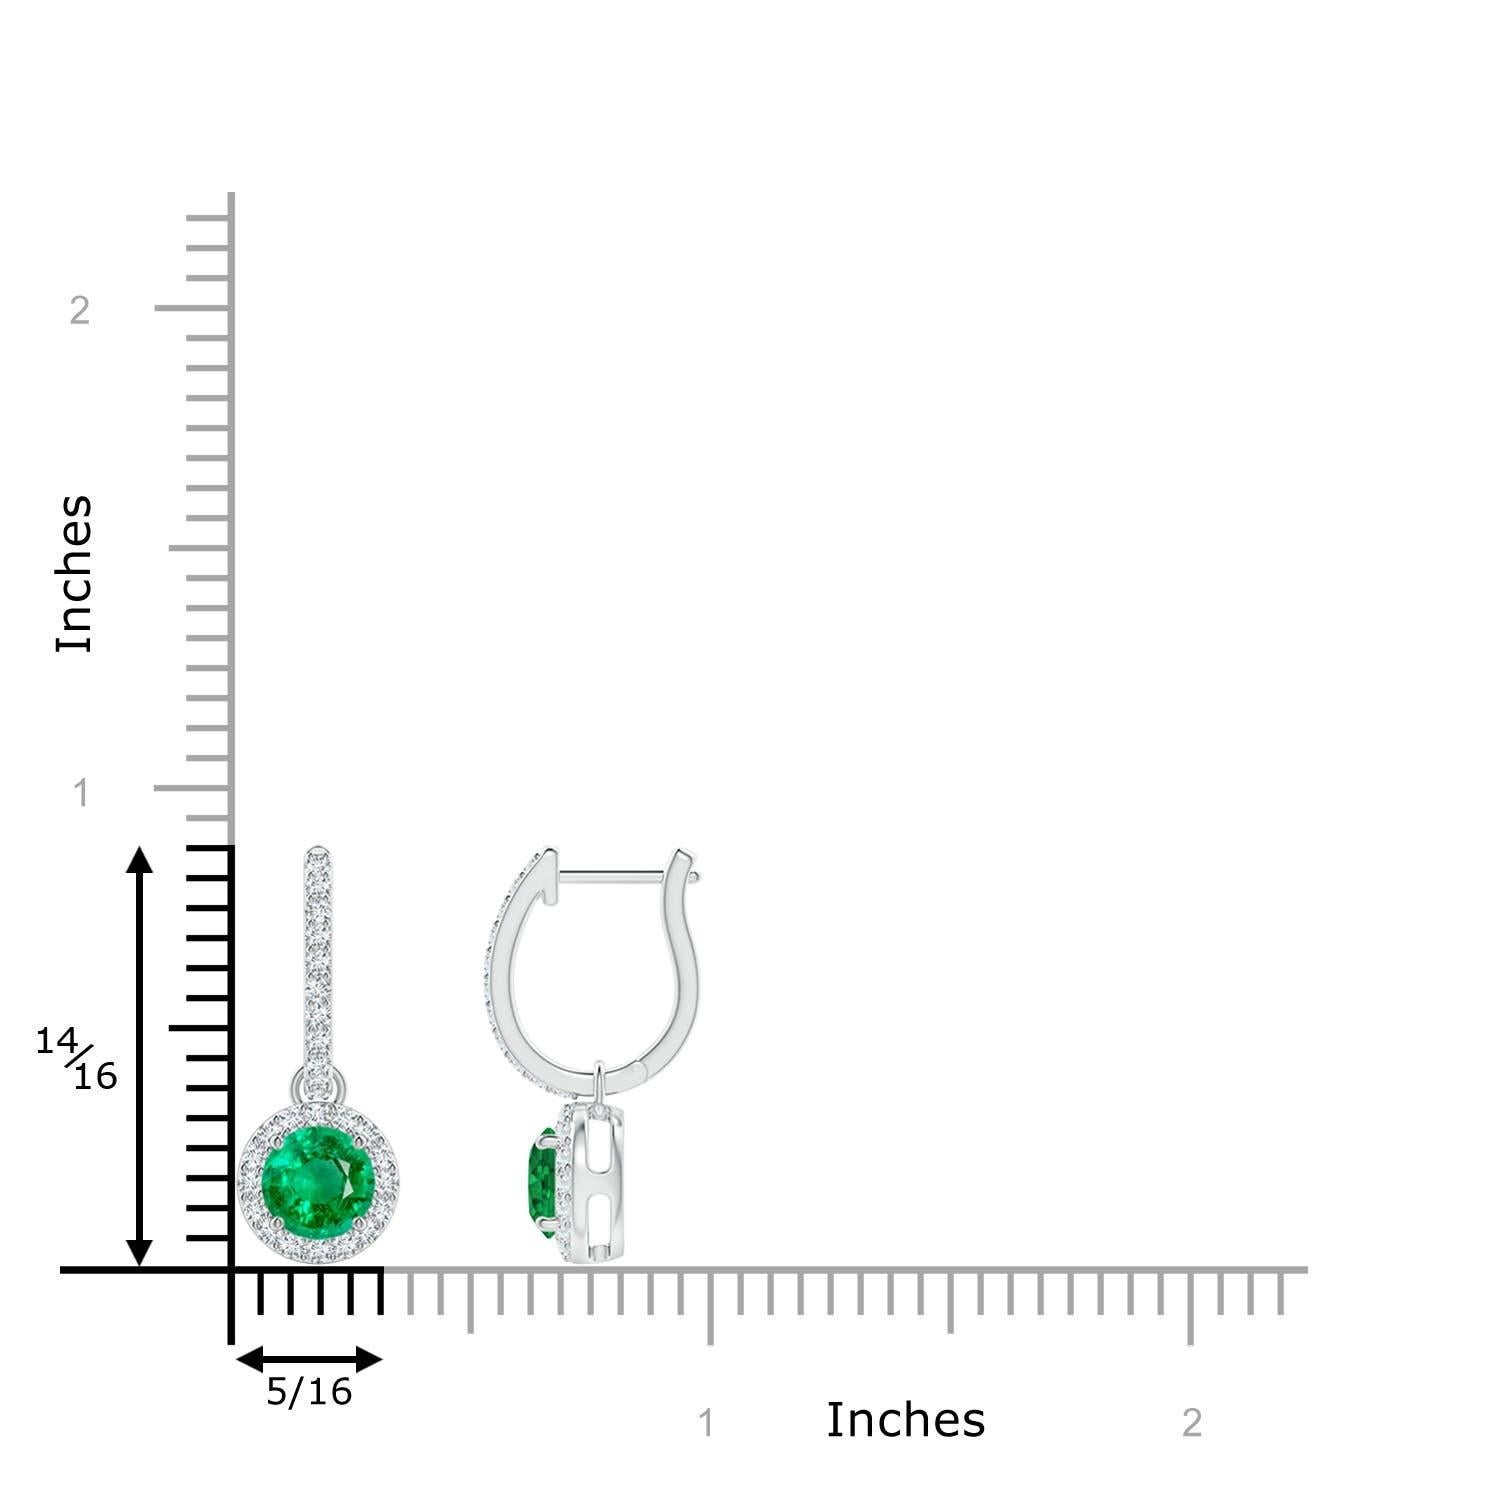 Eingebettet in einen schimmernden Halo aus runden Diamanten sind runde, sattgrüne Smaragde in Zackenfassung. Die diamantenen Akzente auf dem Ring verleihen diesen aus Platin gefertigten Smaragd-Ohrringen einen zusätzlichen Hauch von Eleganz.
Der